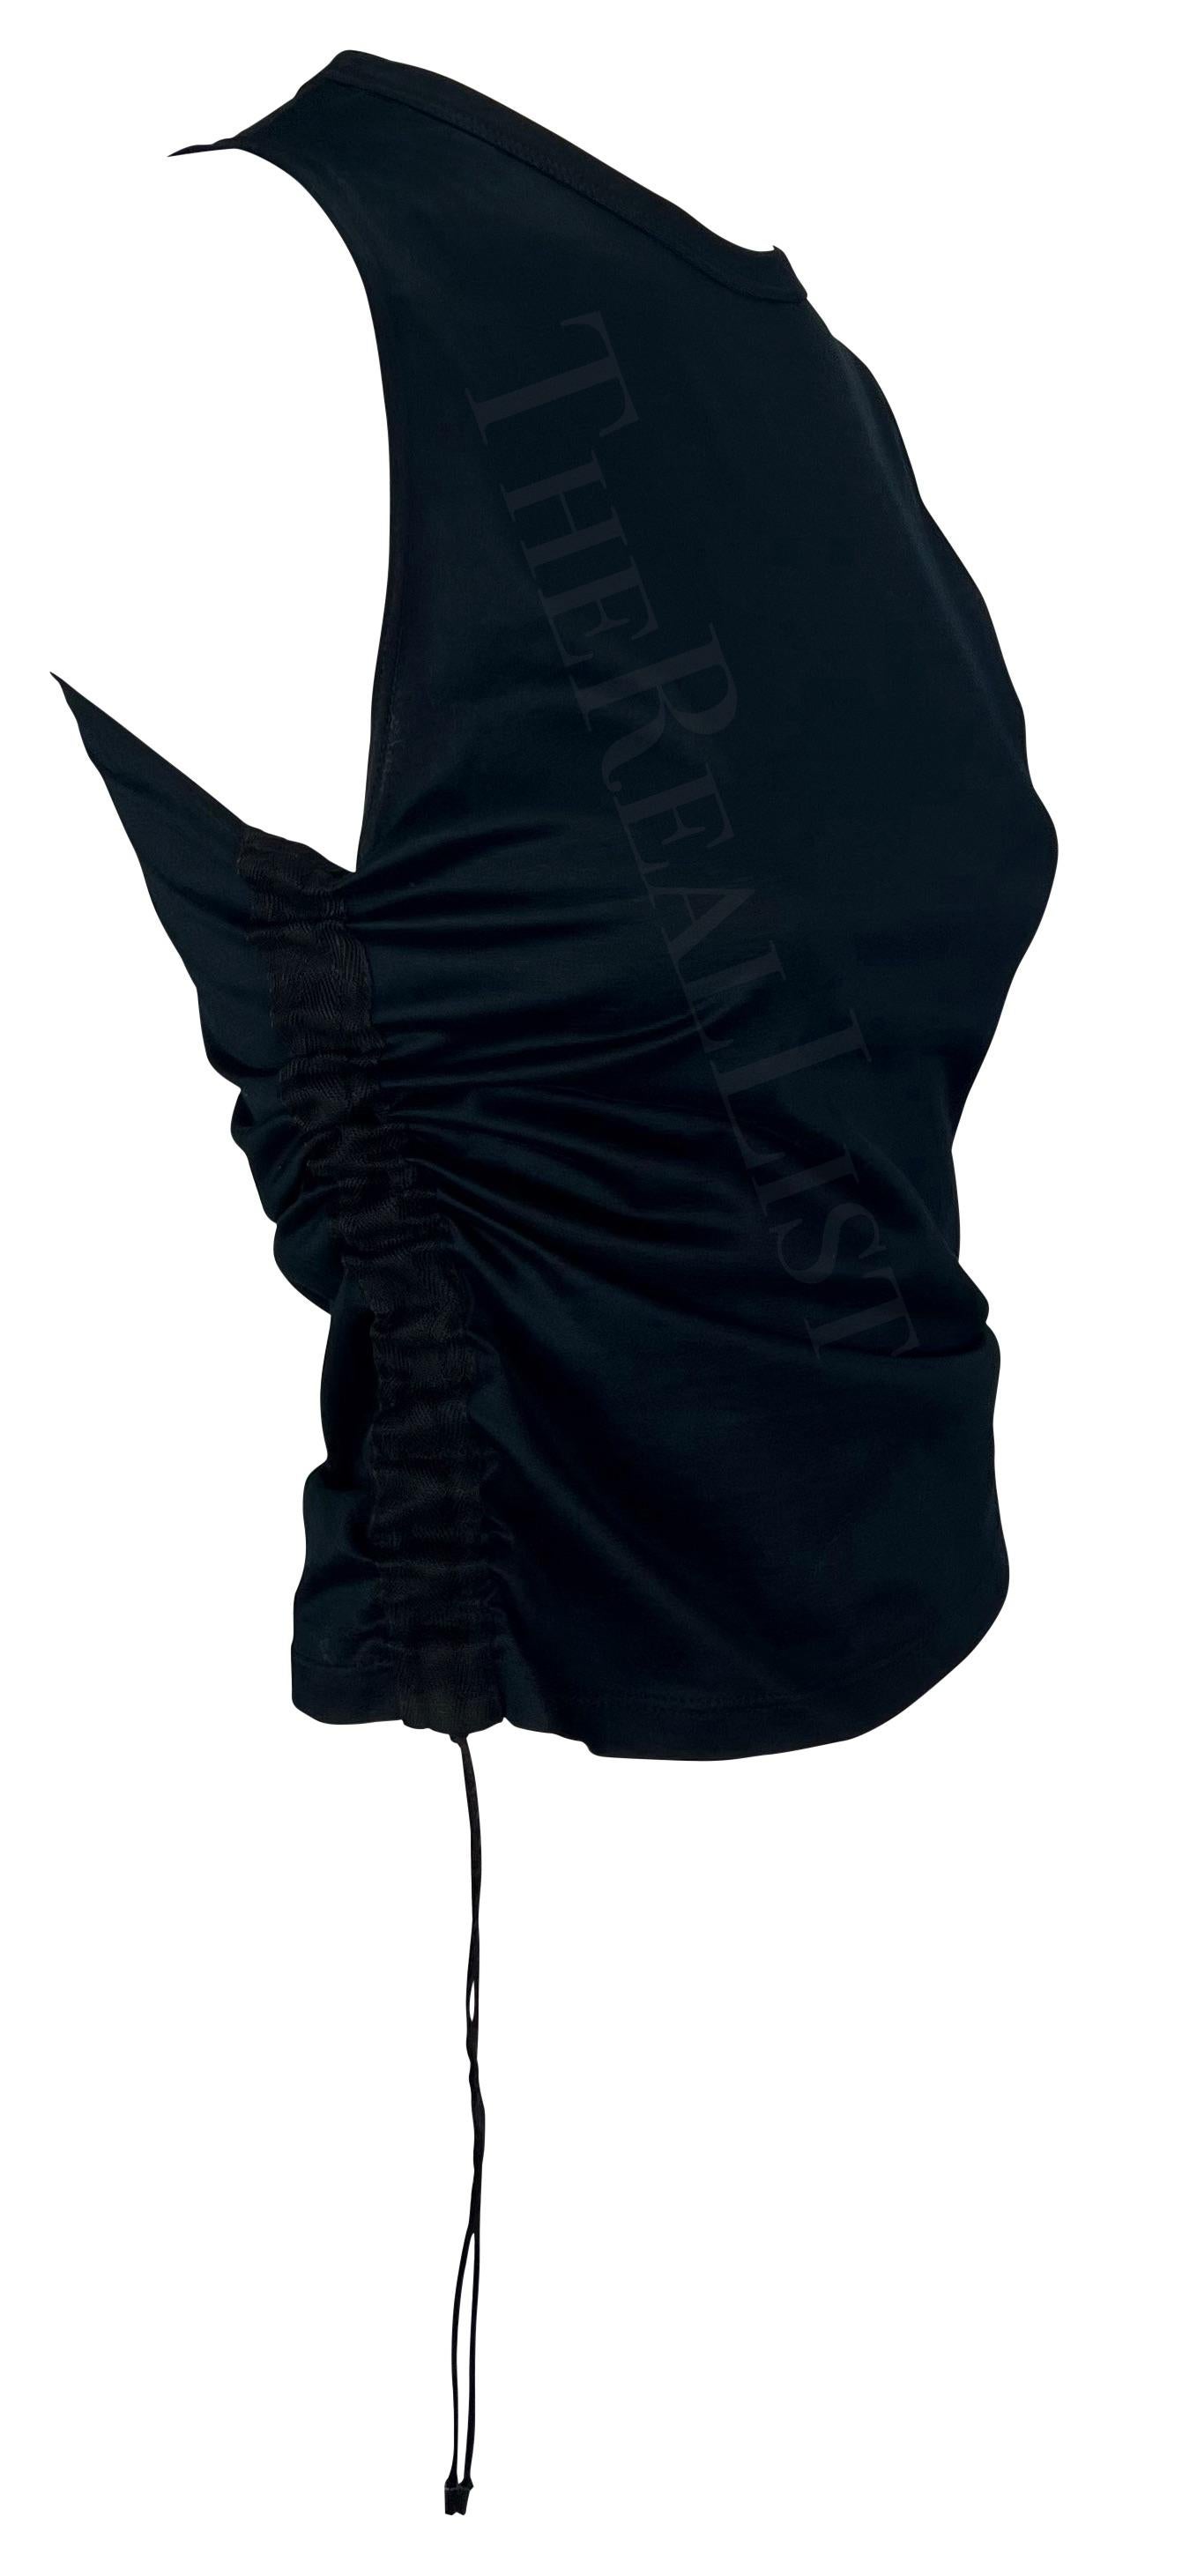 Wir präsentieren ein schickes schwarzes ärmelloses Gucci-Top, entworfen von Tom Ford. Dieses Oberteil aus der Frühjahr/Sommer-Kollektion 2001 zeichnet sich durch eine Lasche an einer Schulter und einen Kordelzug an der Seite aus, die seine